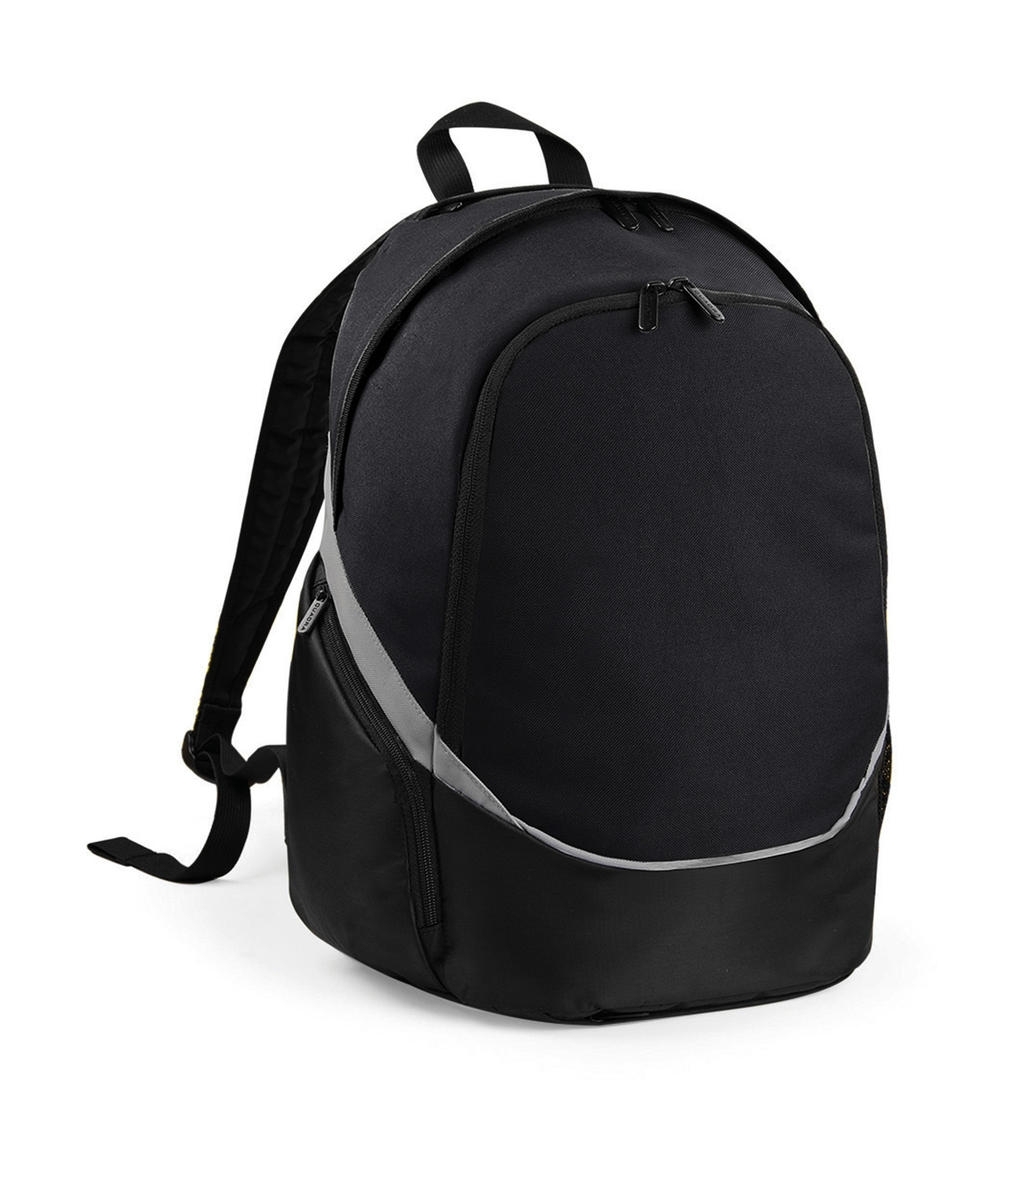 Pro Team Backpack Black/Grey Noir